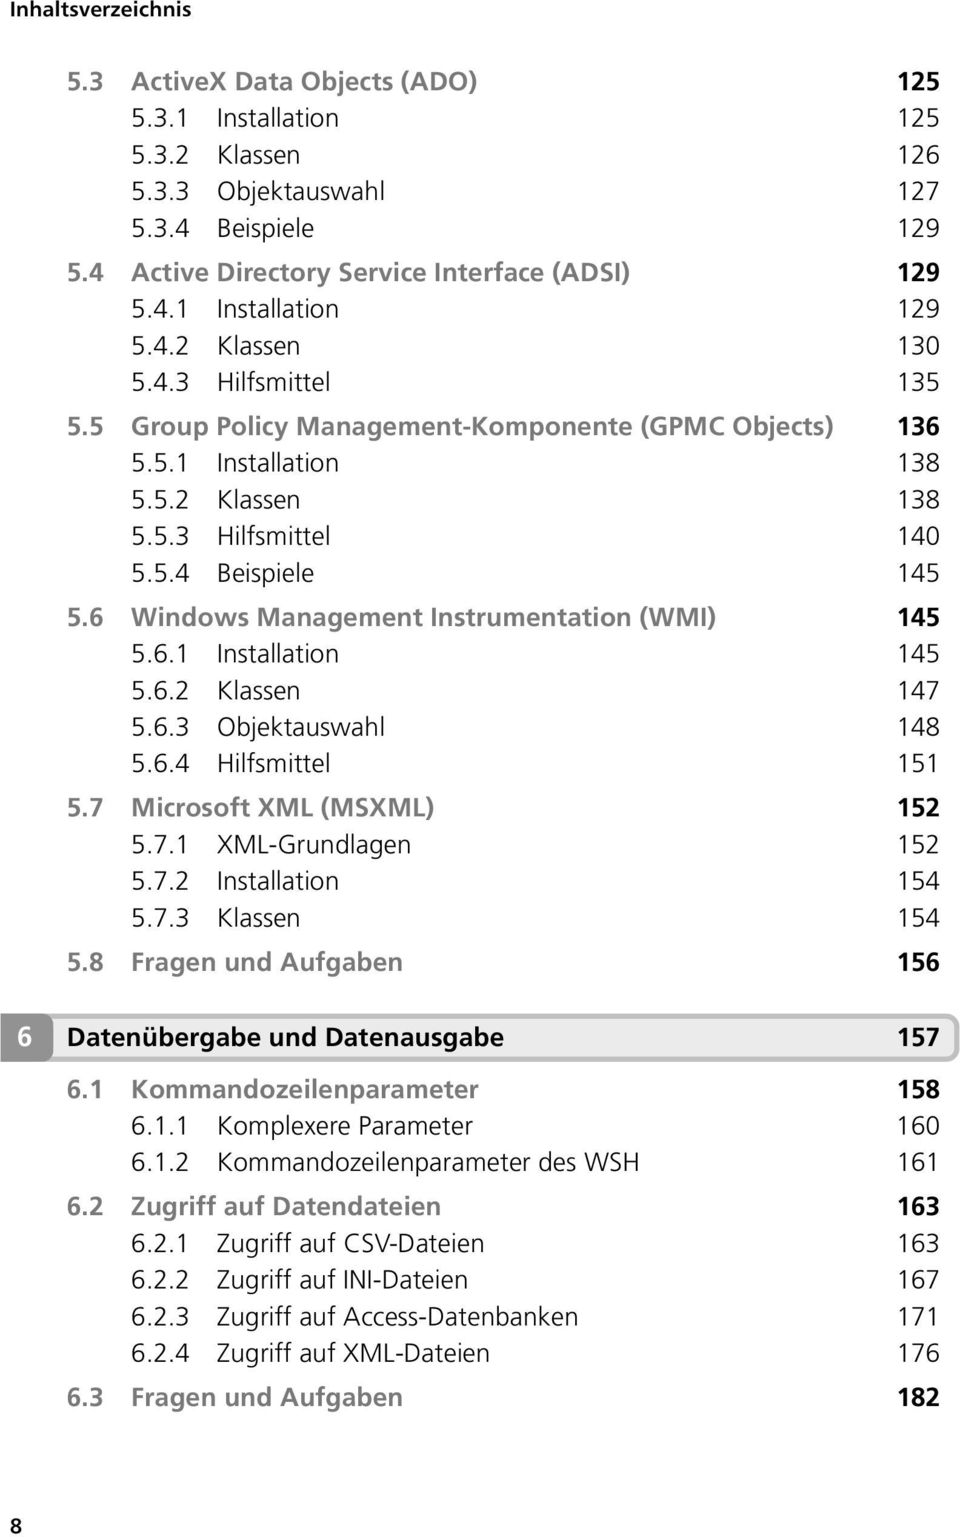 6 Windows Management Instrumentation (WMI) 145 5.6.1 Installation 145 5.6.2 Klassen 147 5.6.3 Objektauswahl 148 5.6.4 Hilfsmittel 151 5.7 Microsoft XML (MSXML) 152 5.7.1 XML-Grundlagen 152 5.7.2 Installation 154 5.